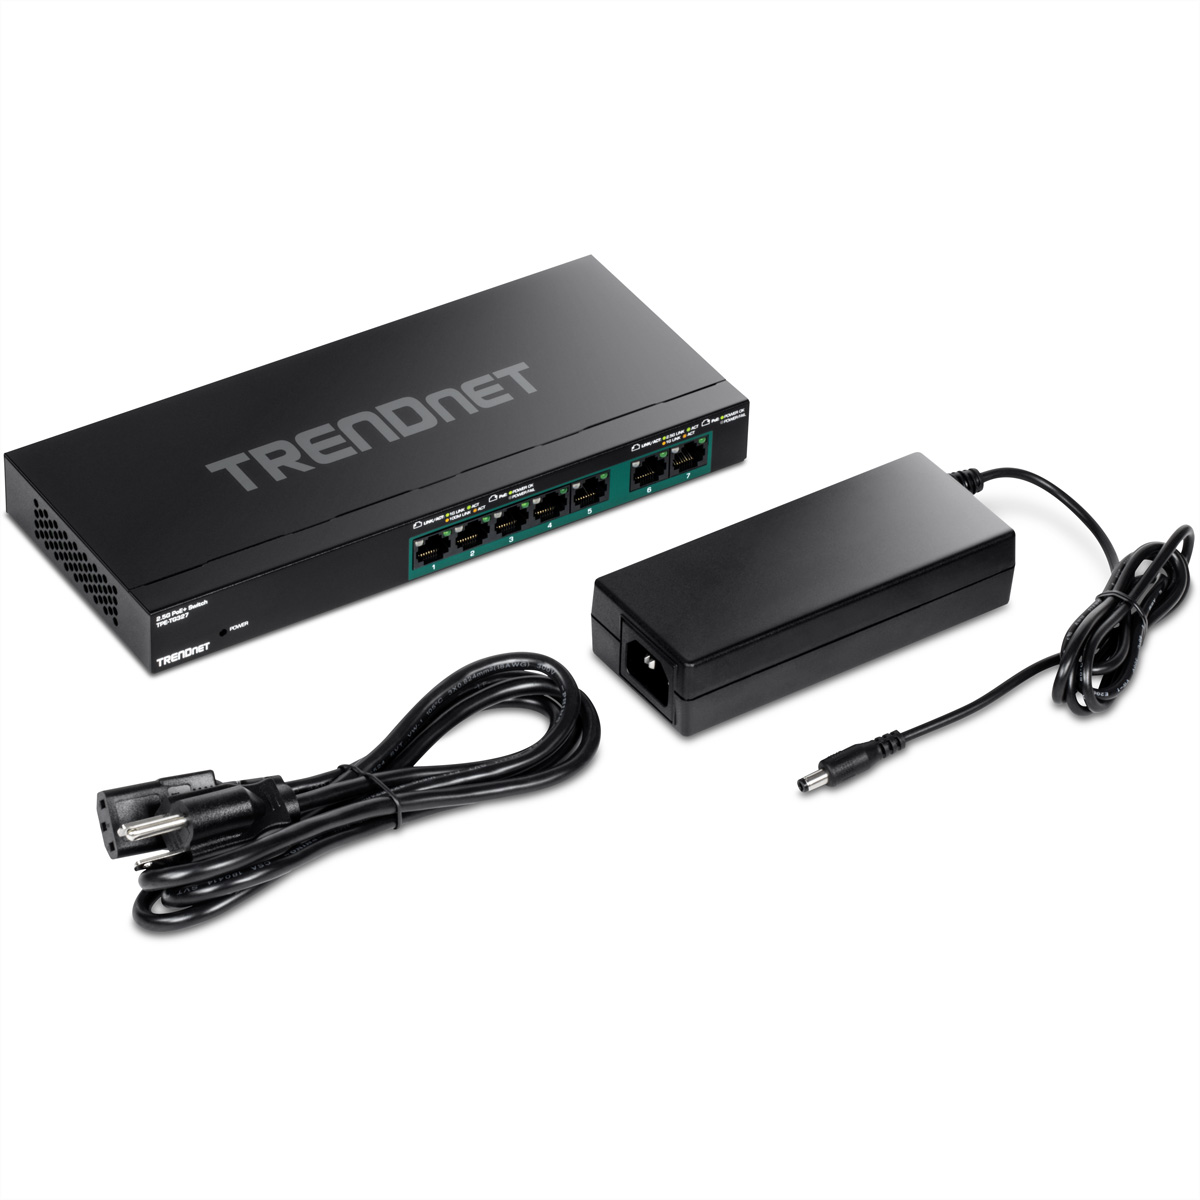 TRENDNET TPE-TG327 7-Port PoE+ Switch Switch Gigabit Multi-Gigabit PoE